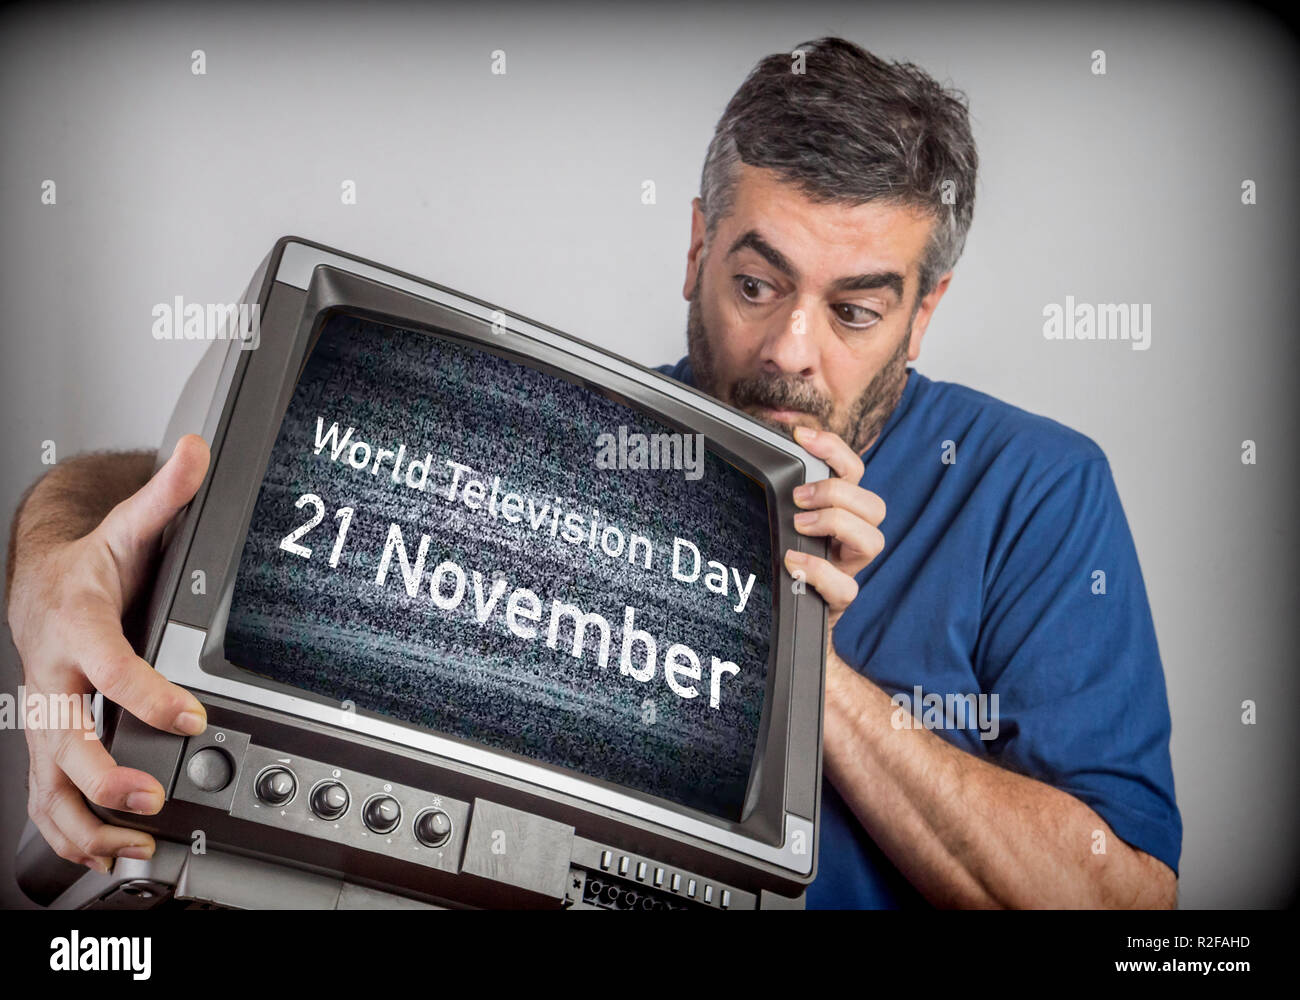 Uomo di mezza età detiene una TV con televisione mondiale giorno 21 novembre schermo, immagine concettuale Foto Stock